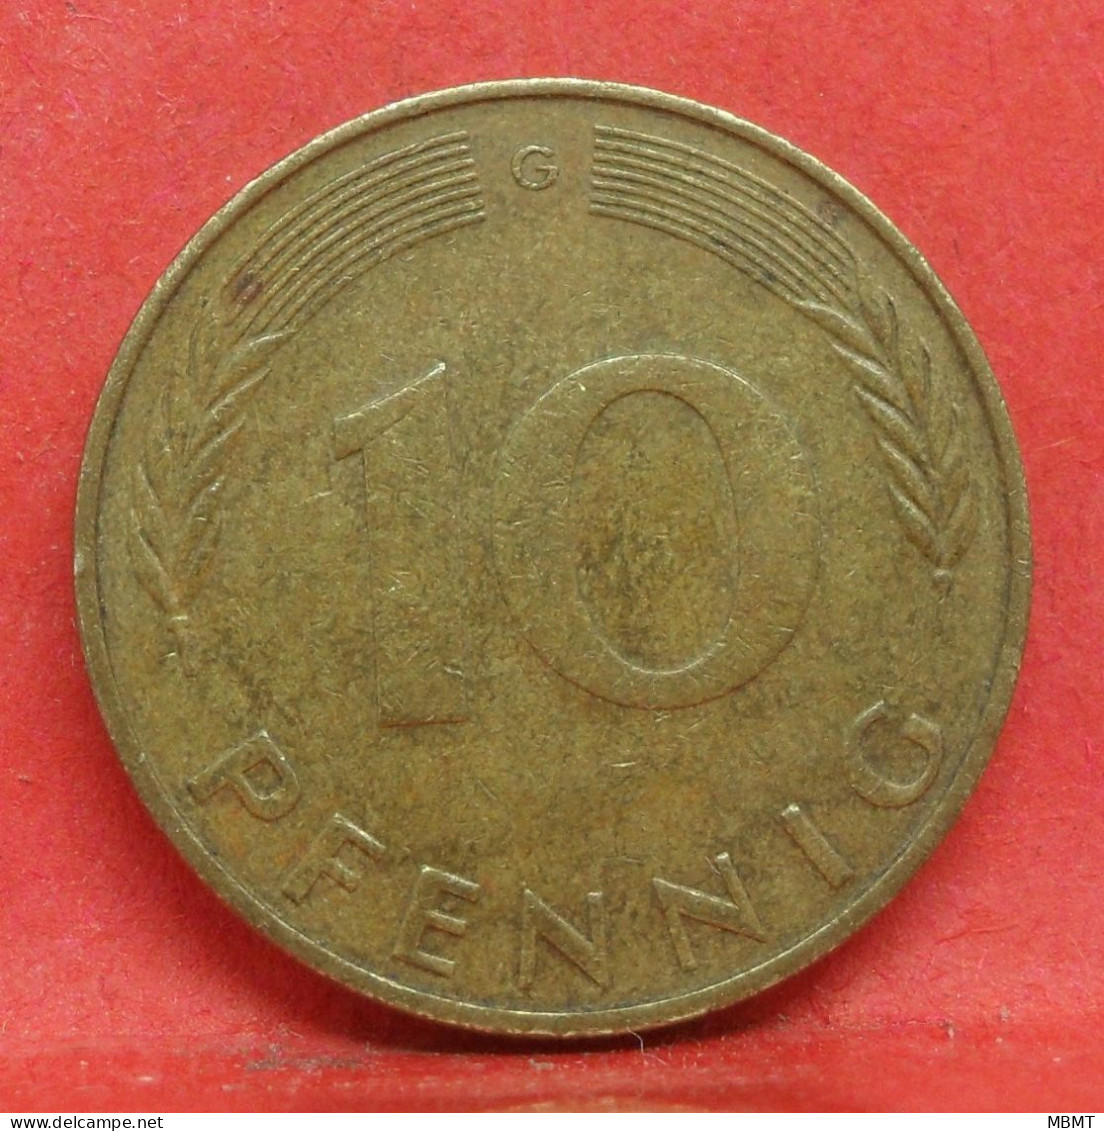 10 Pfennig 1972 G - TTB - Pièce Monnaie Allemagne - Article N°1498 - 10 Pfennig